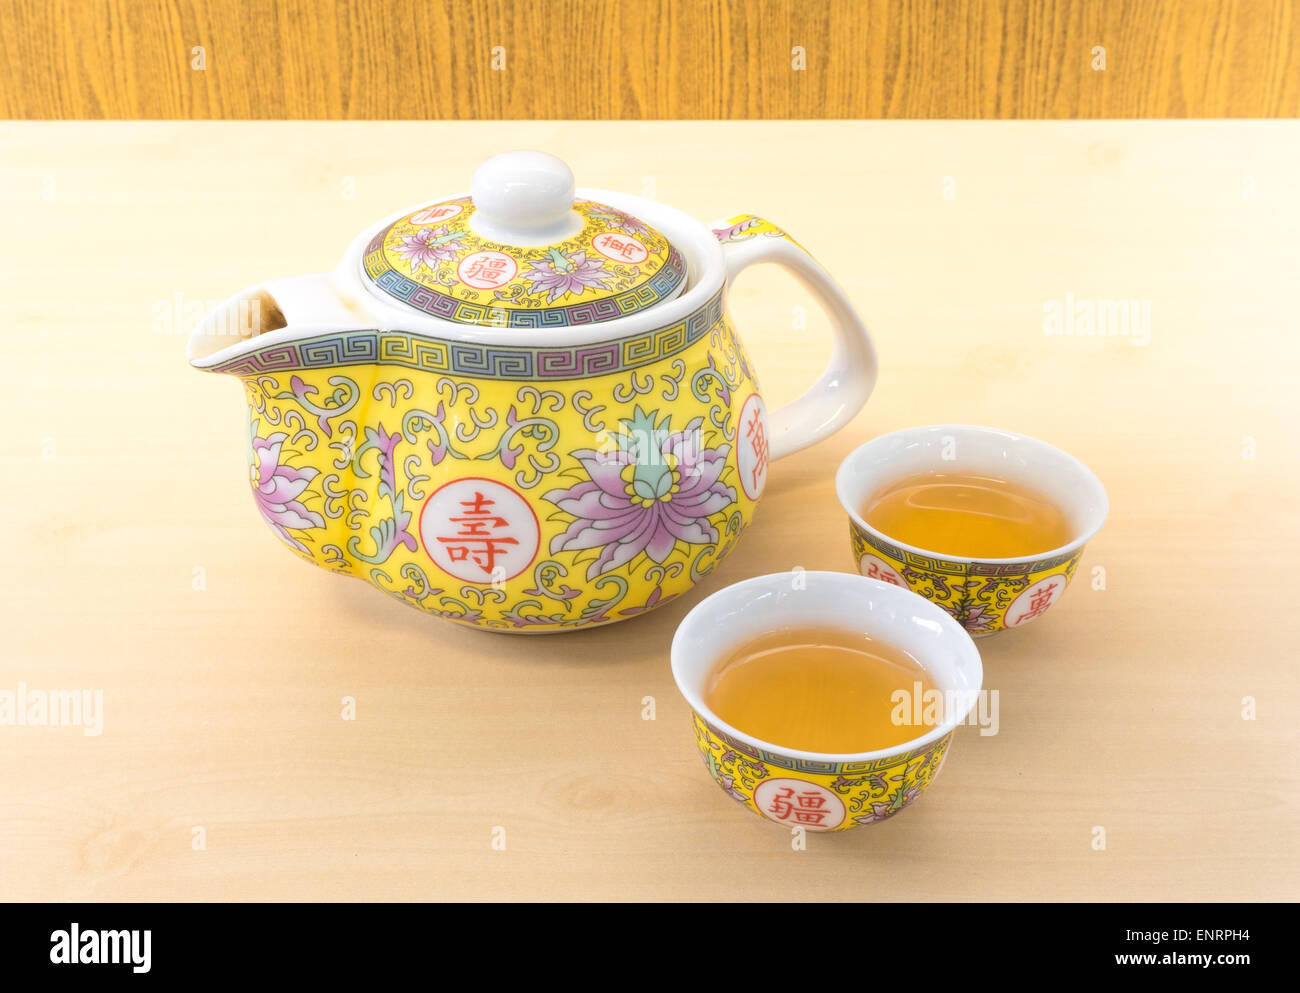 Pot de thé chinois ensemble avec 2 petite tasse de thé Banque D'Images